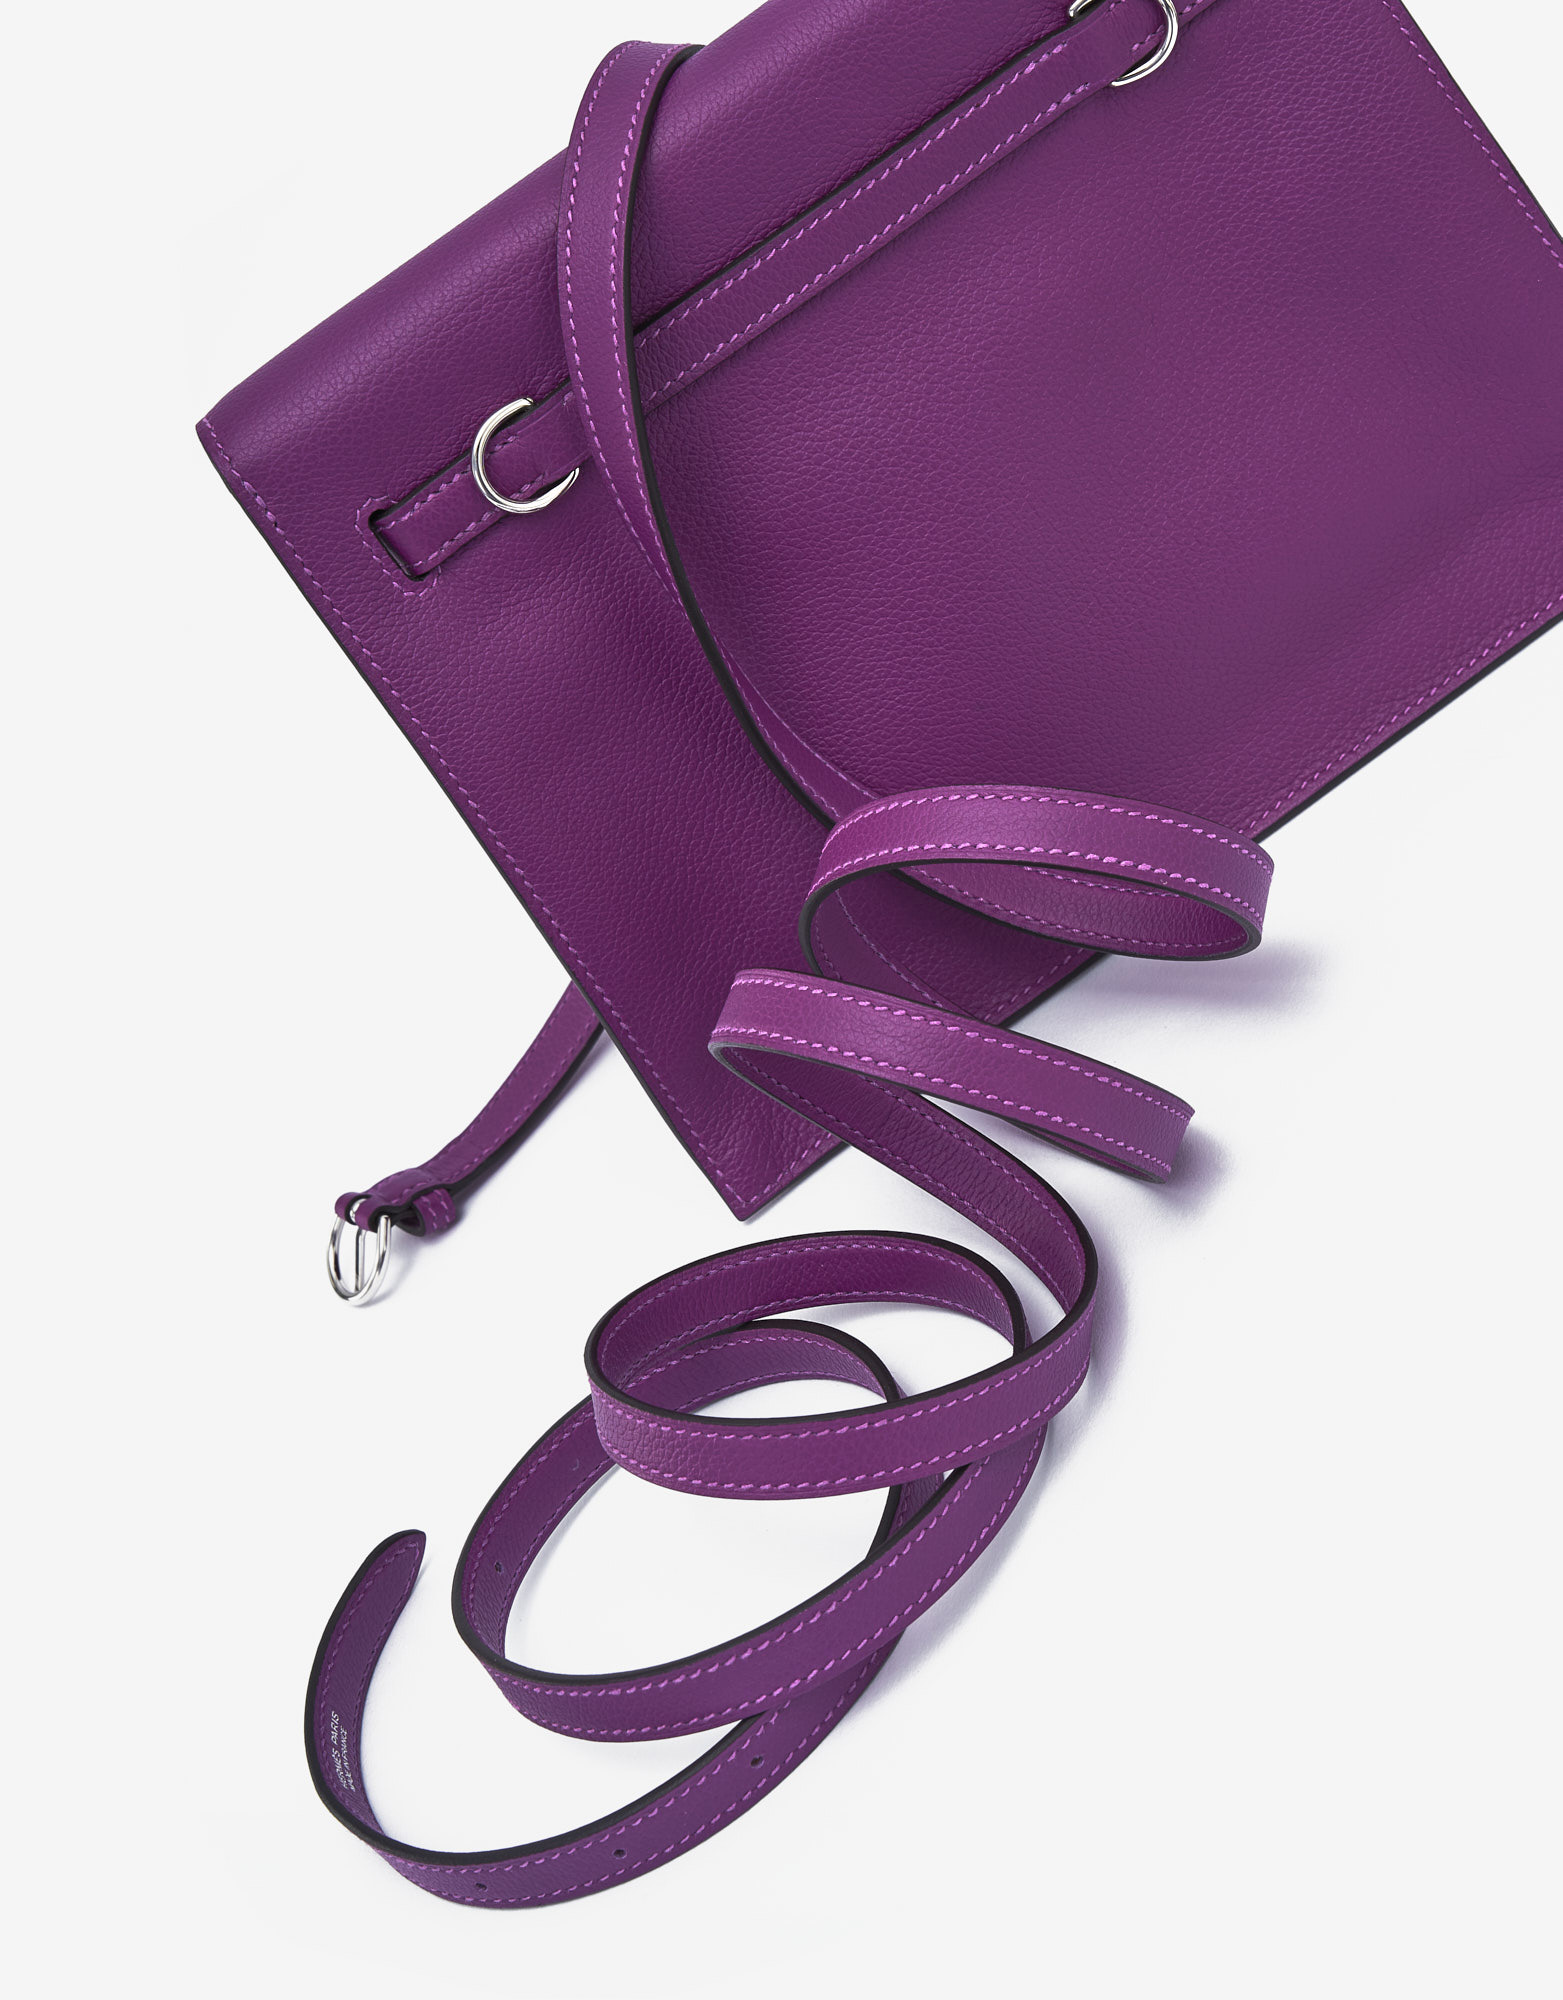 Gebrauchte Hermès Tasche Kelly Danse Evercolor Anemone Violet | Verkaufen Sie Ihre Designer-Tasche auf Saclab.com